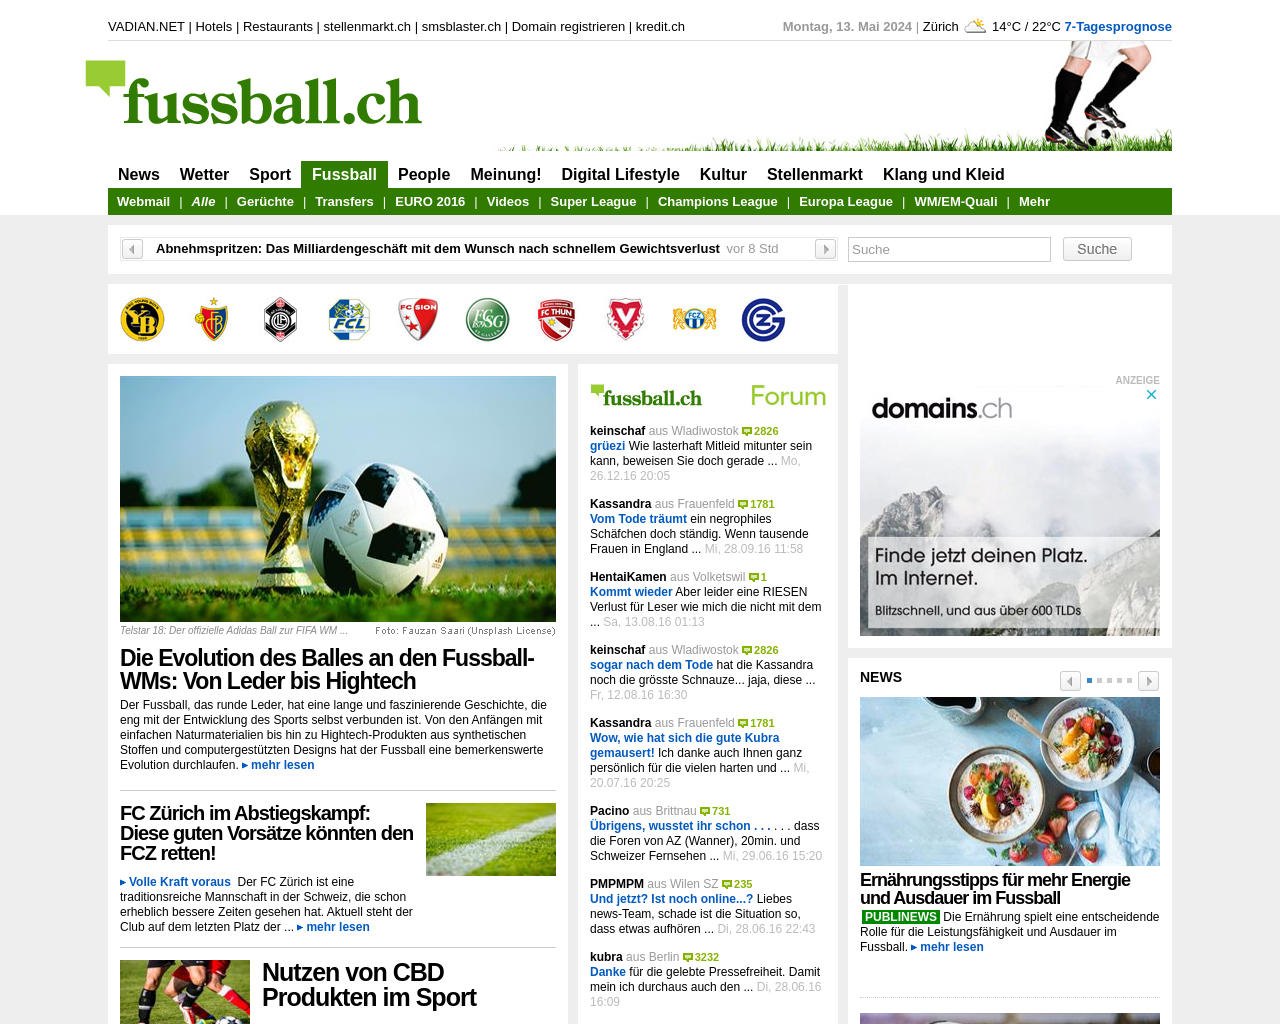 fussball.ch